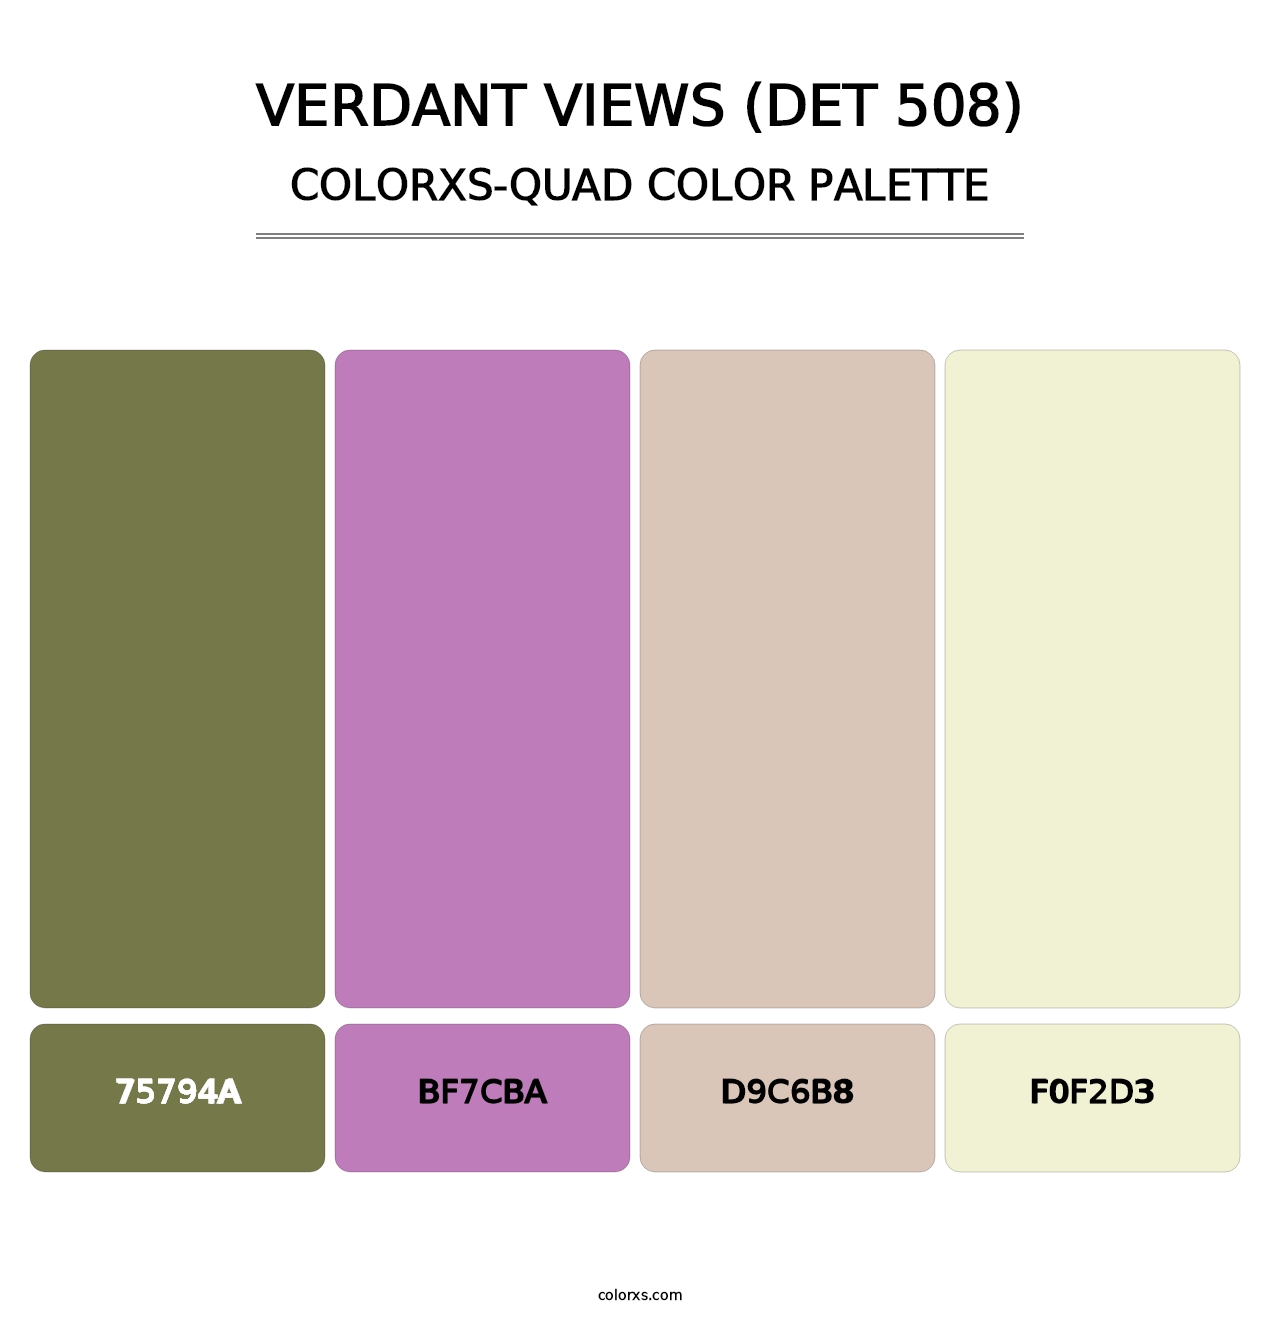 Verdant Views (DET 508) - Colorxs Quad Palette